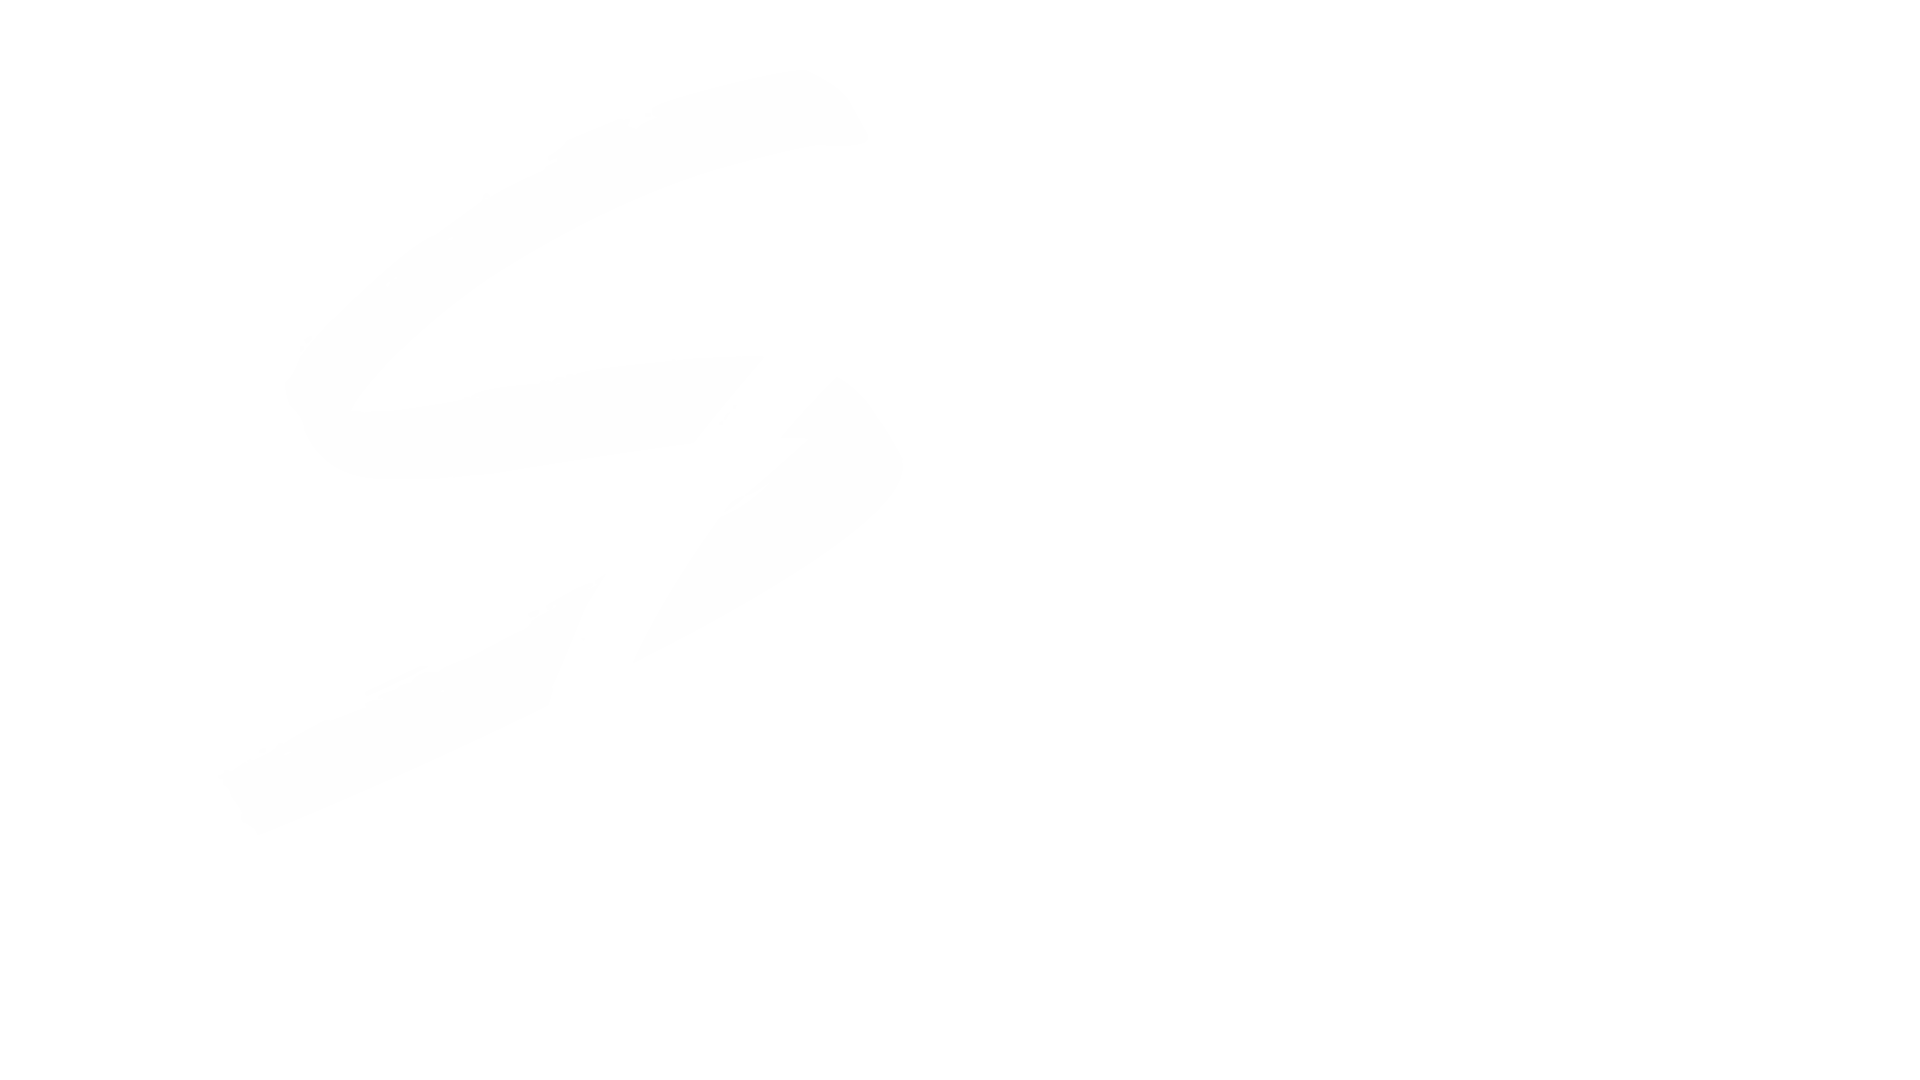 Seized Clothing Co.